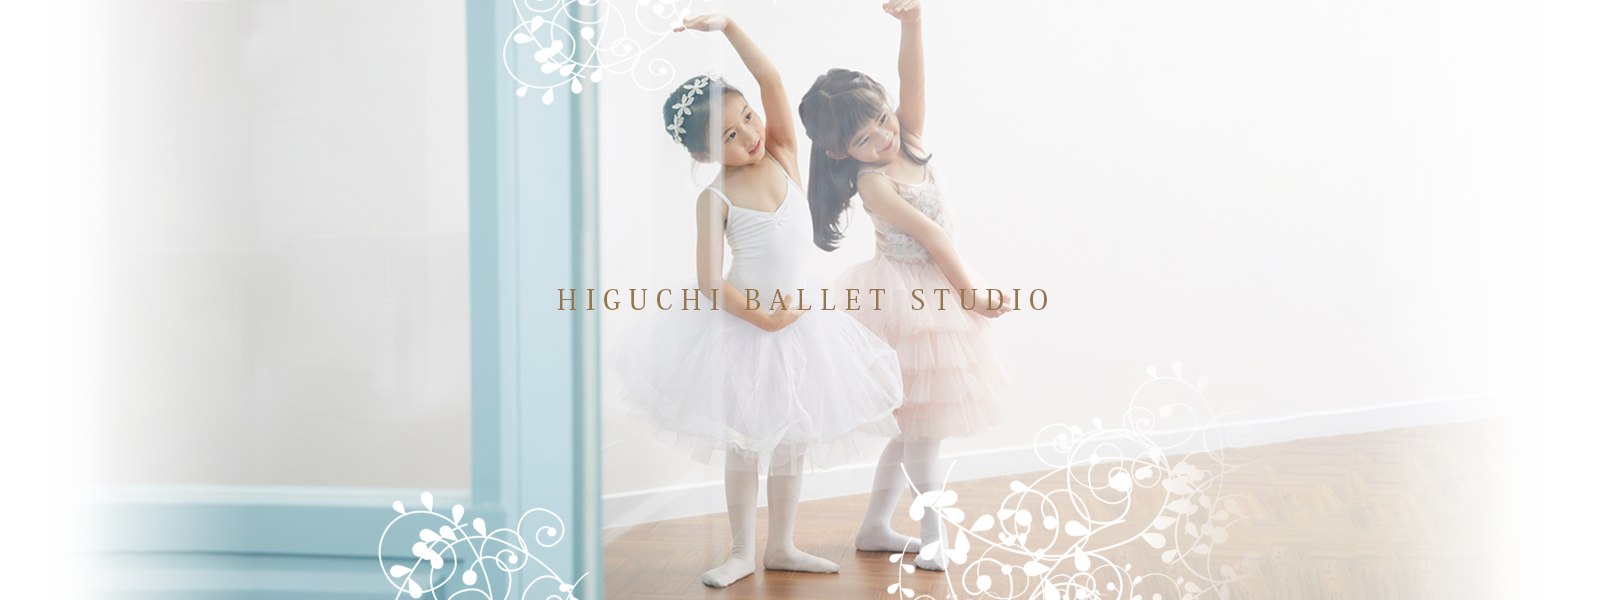 HIGUCHI BALLET STUDIO